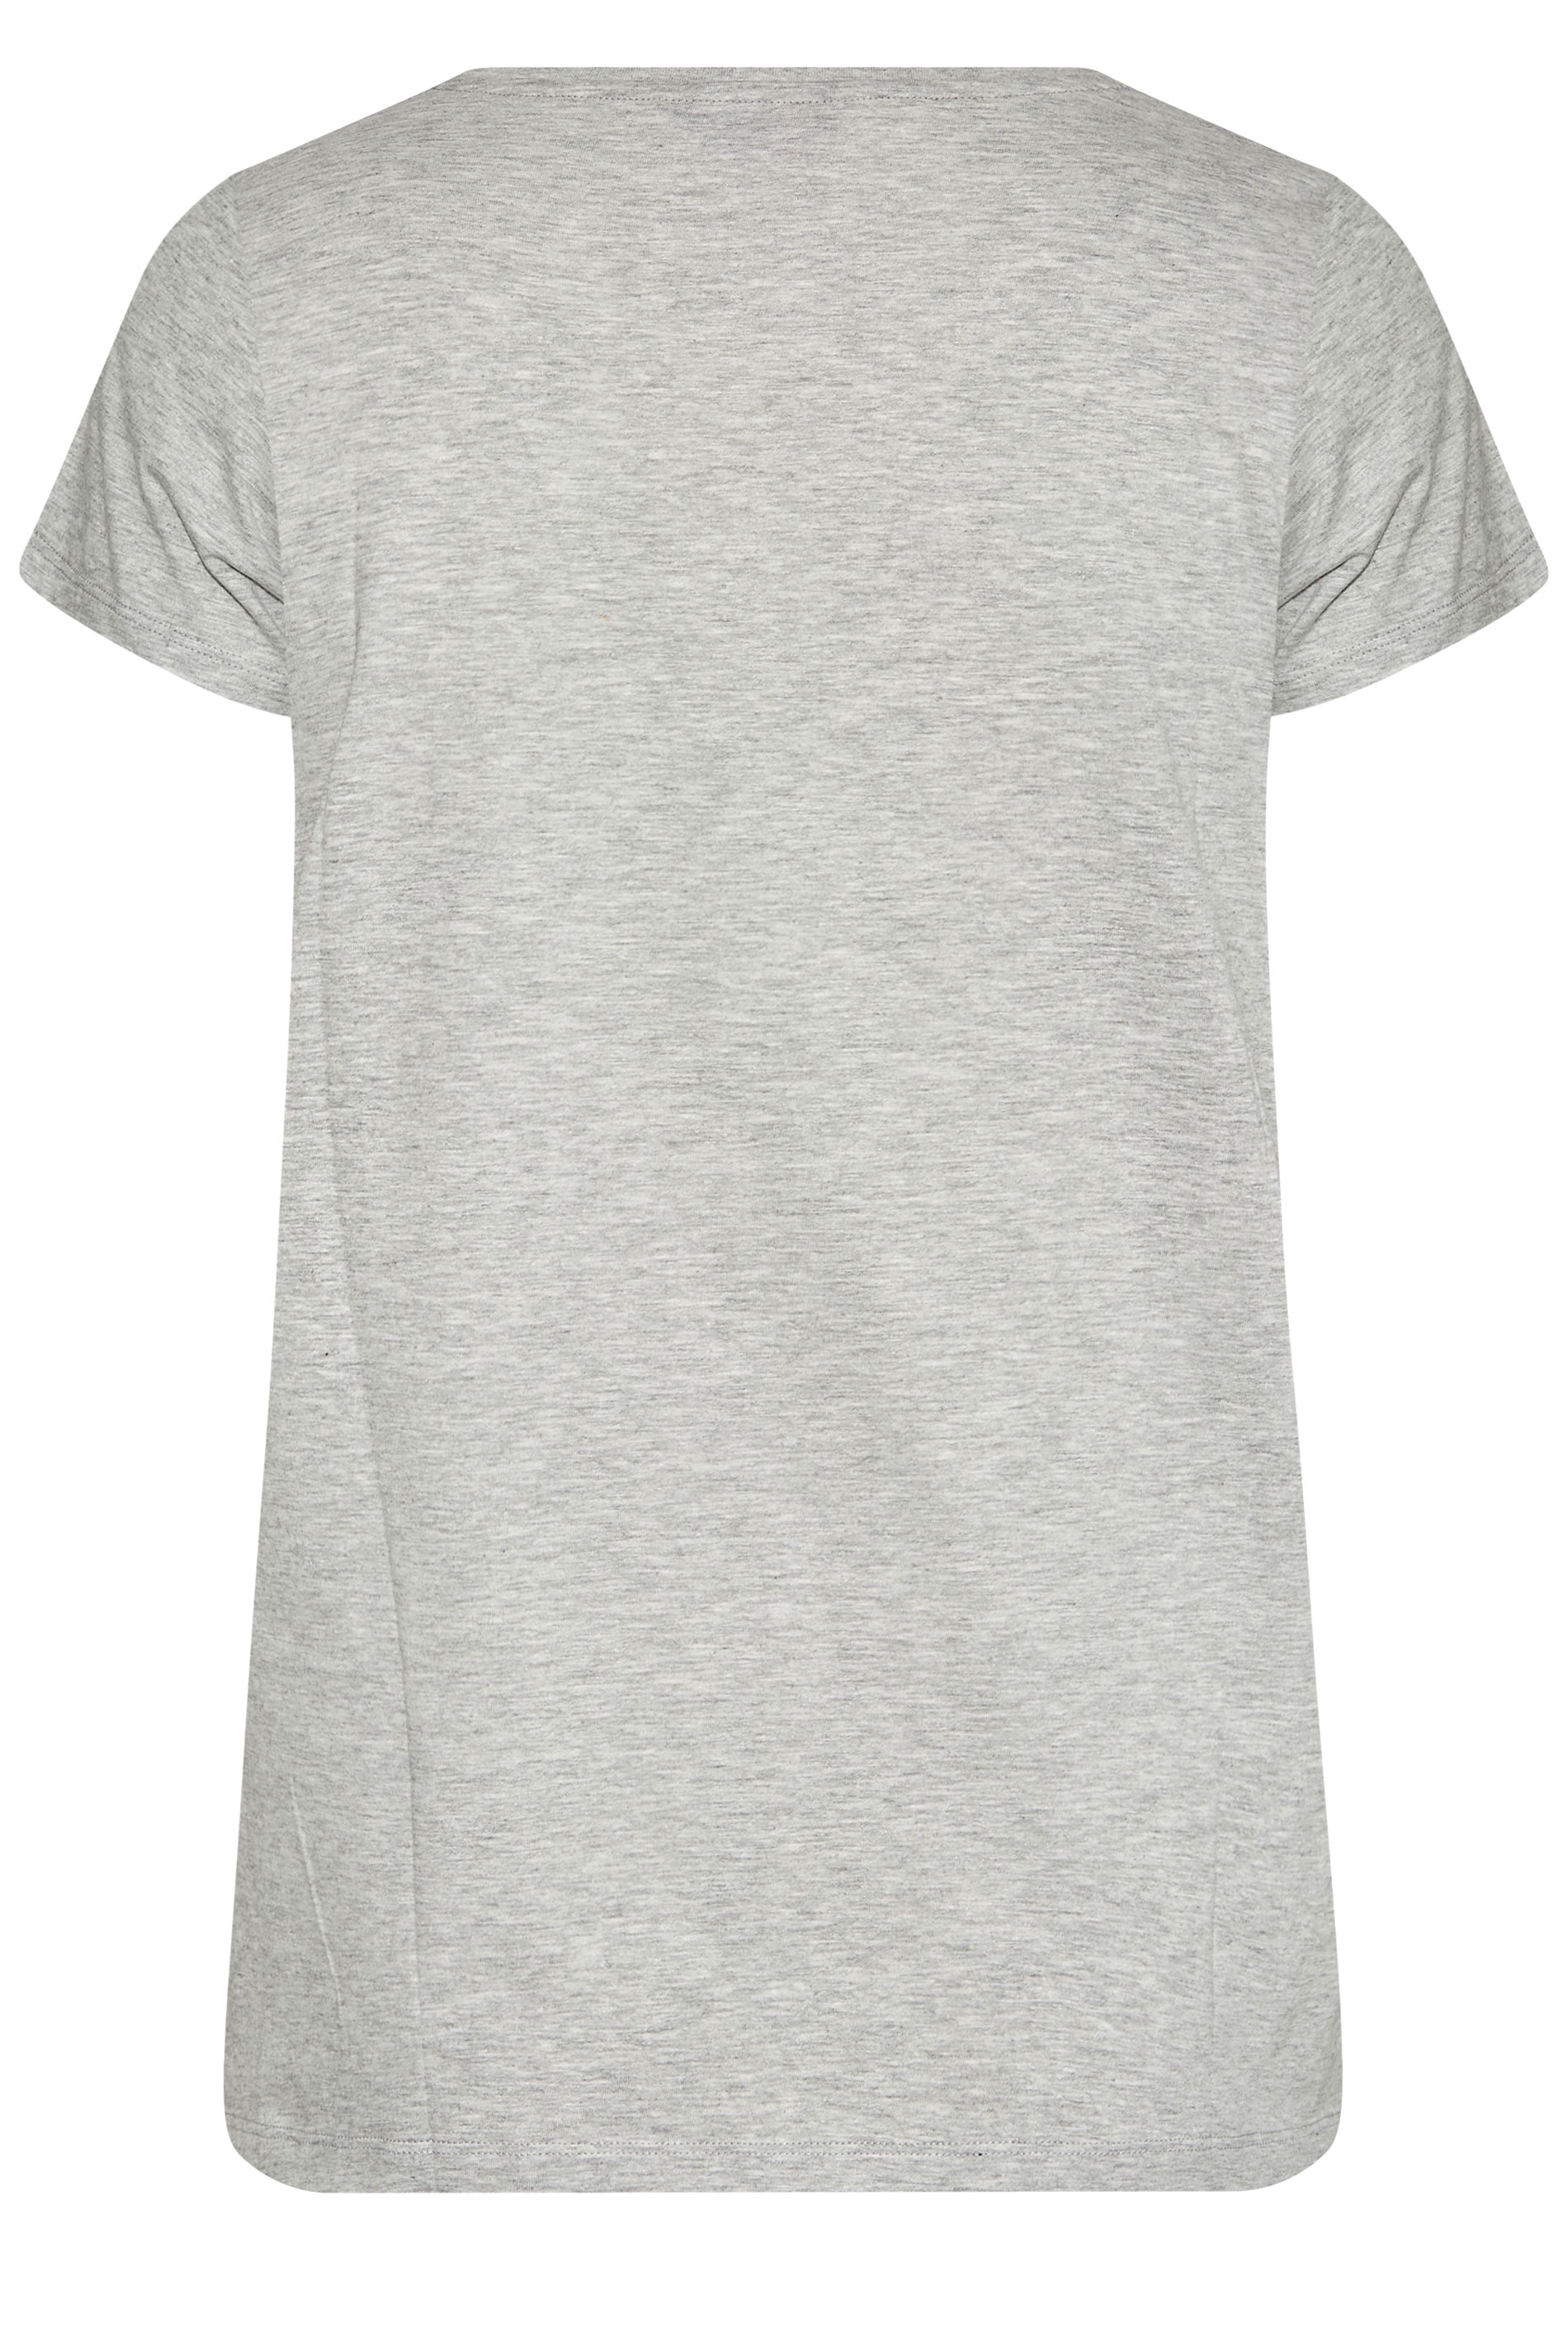 Grande taille  Tops Grande taille  T-Shirts Basiques & Débardeurs | T-Shirt Gris Clair en Jersey - DZ02553